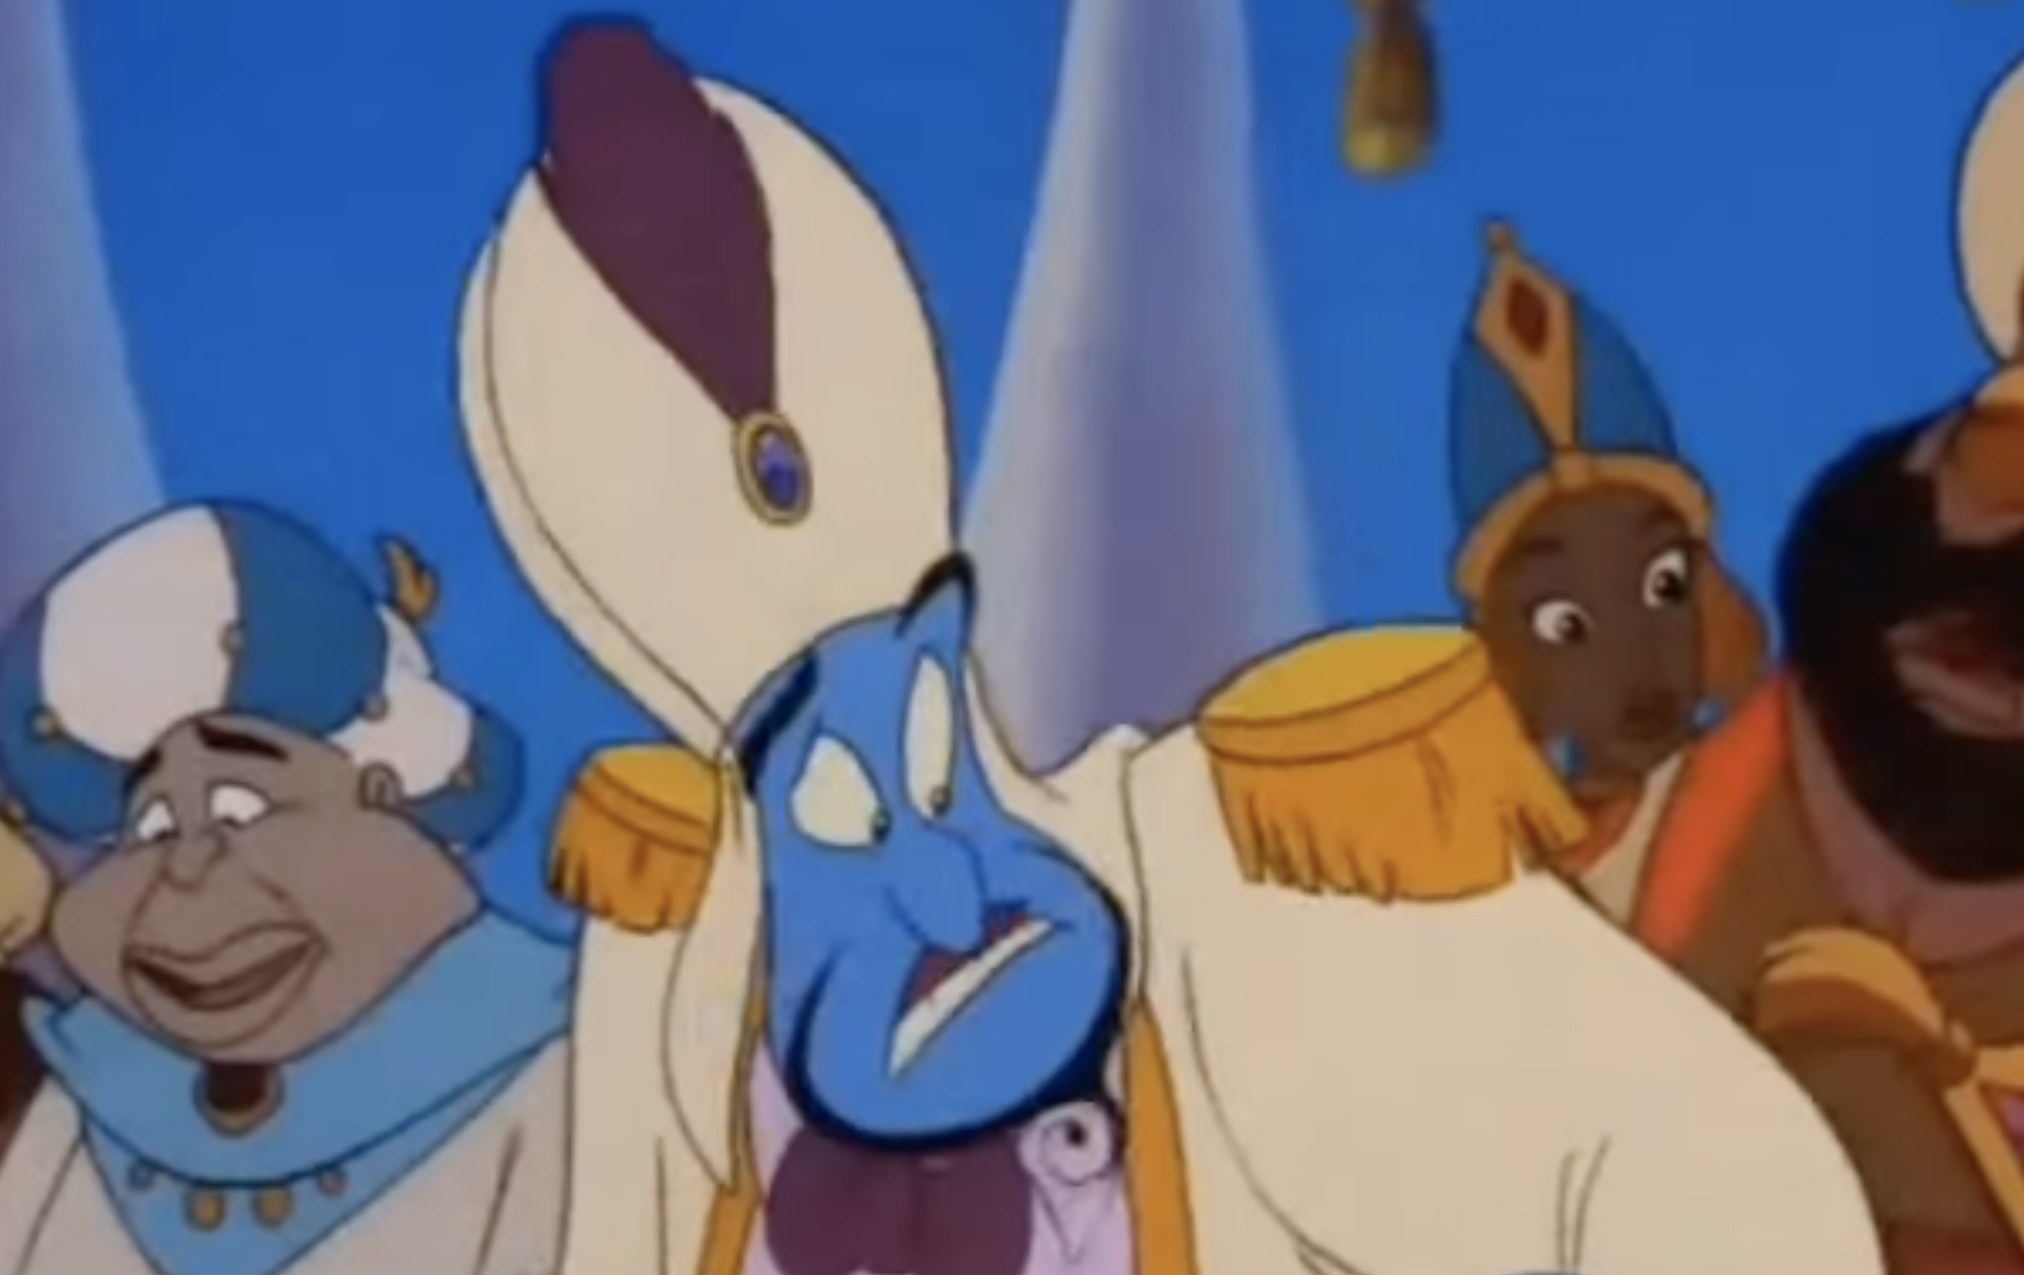 The Genie in Aladdin